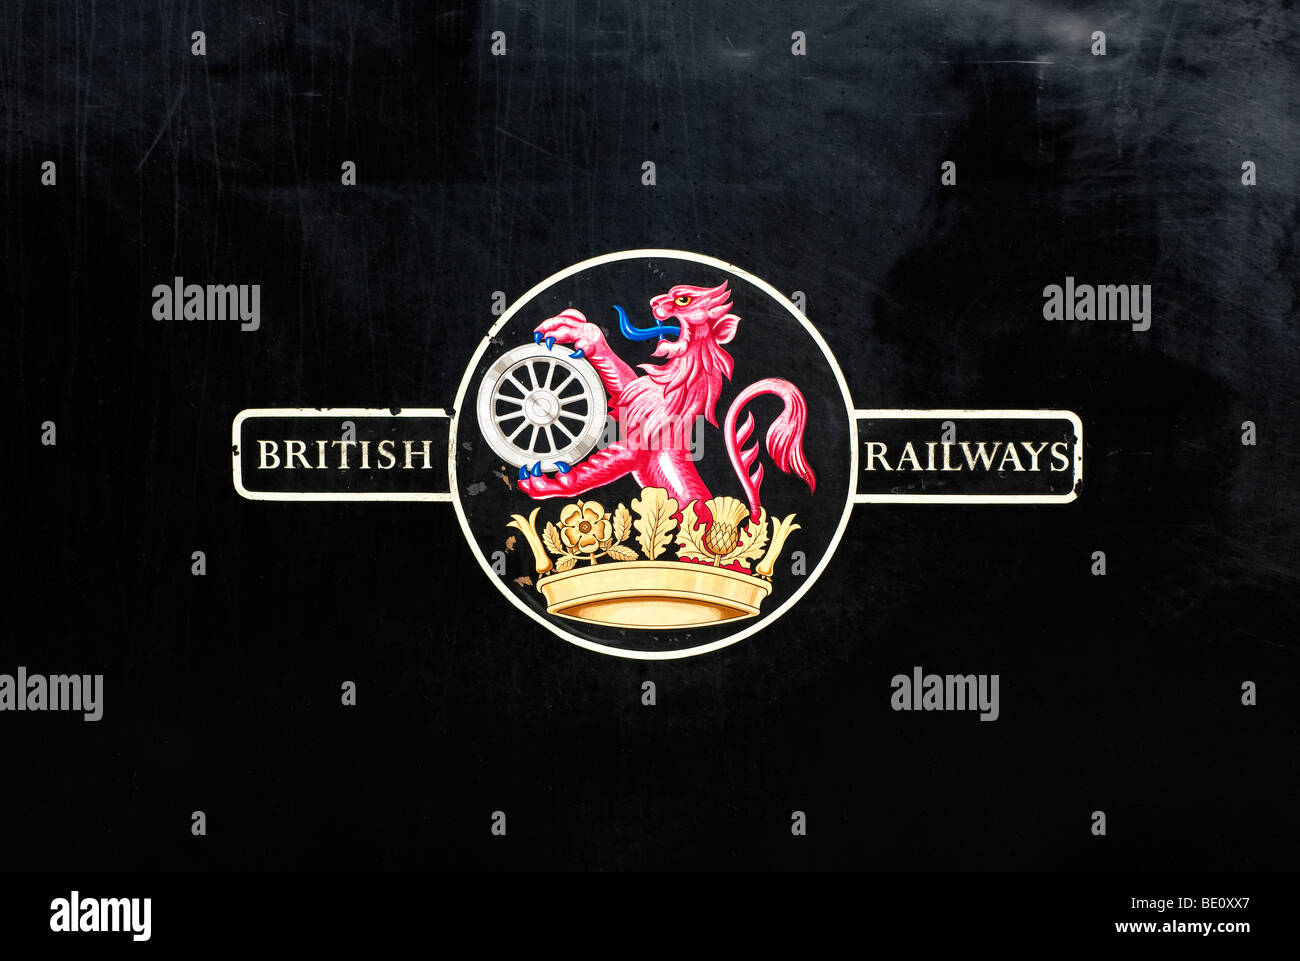 British Railways sur le côté d'une vieille machine à vapeur Banque D'Images